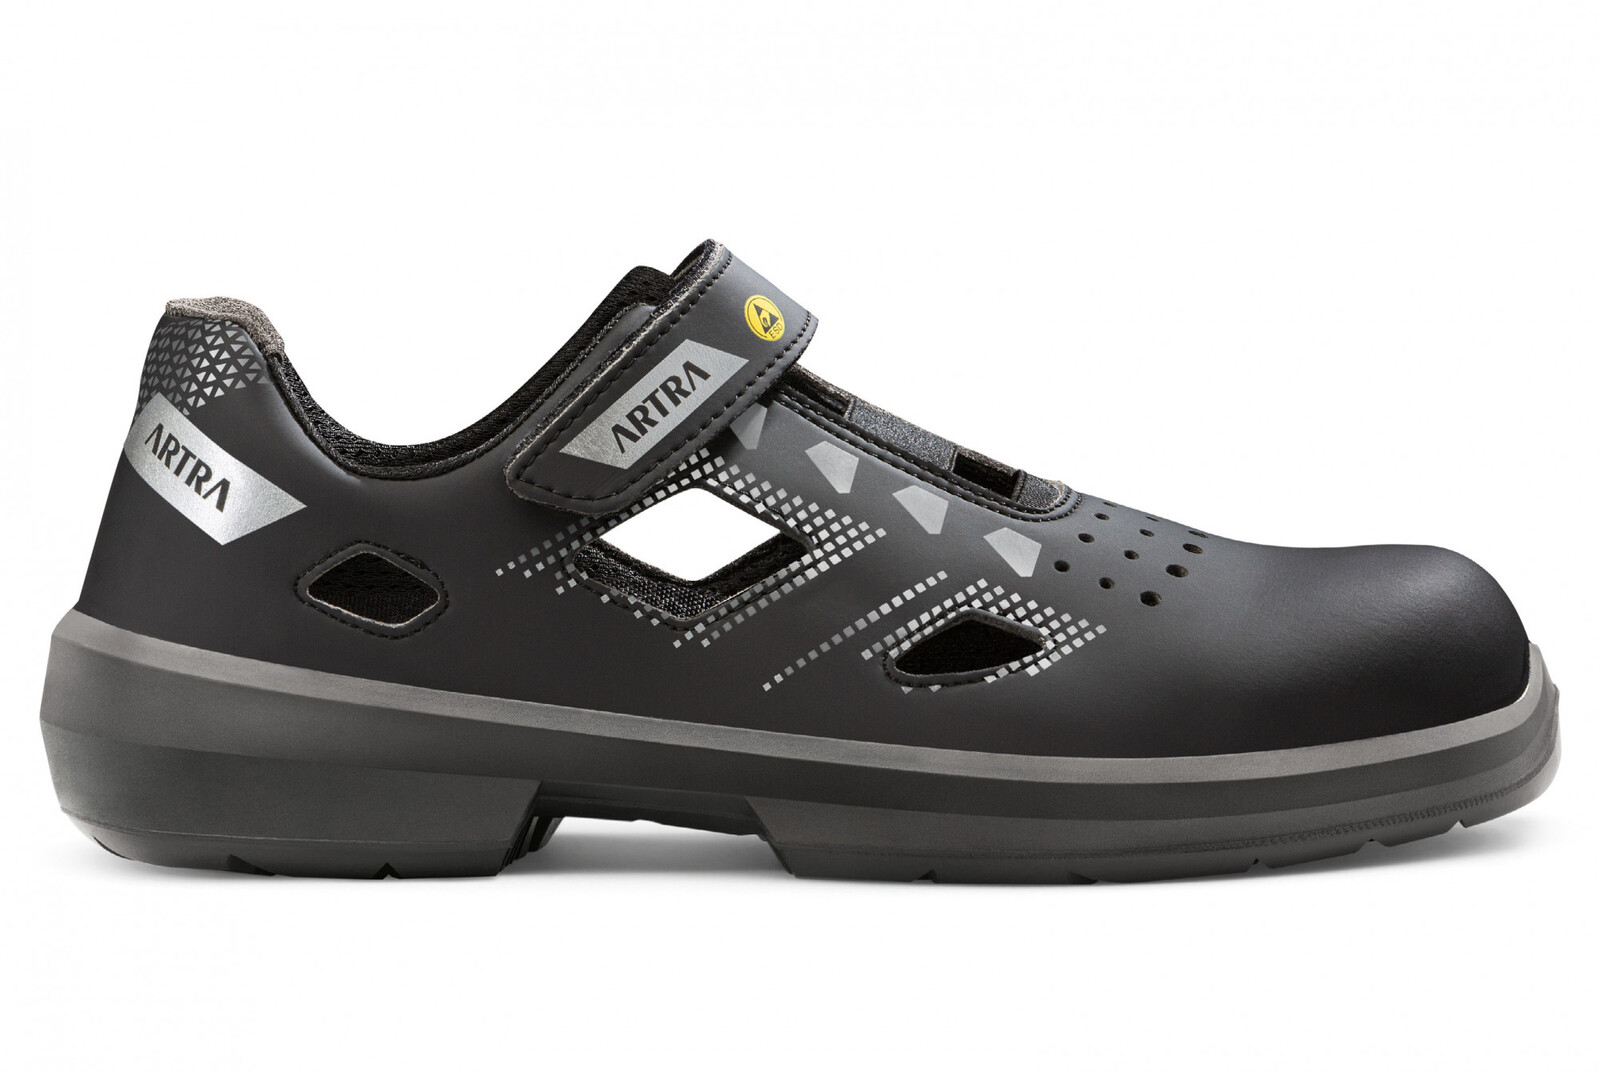 Bezpečnostné sandále Artra Arzo 805 676560 S1 SRC ESD MF - veľkosť: 37, farba: čierna/sivá